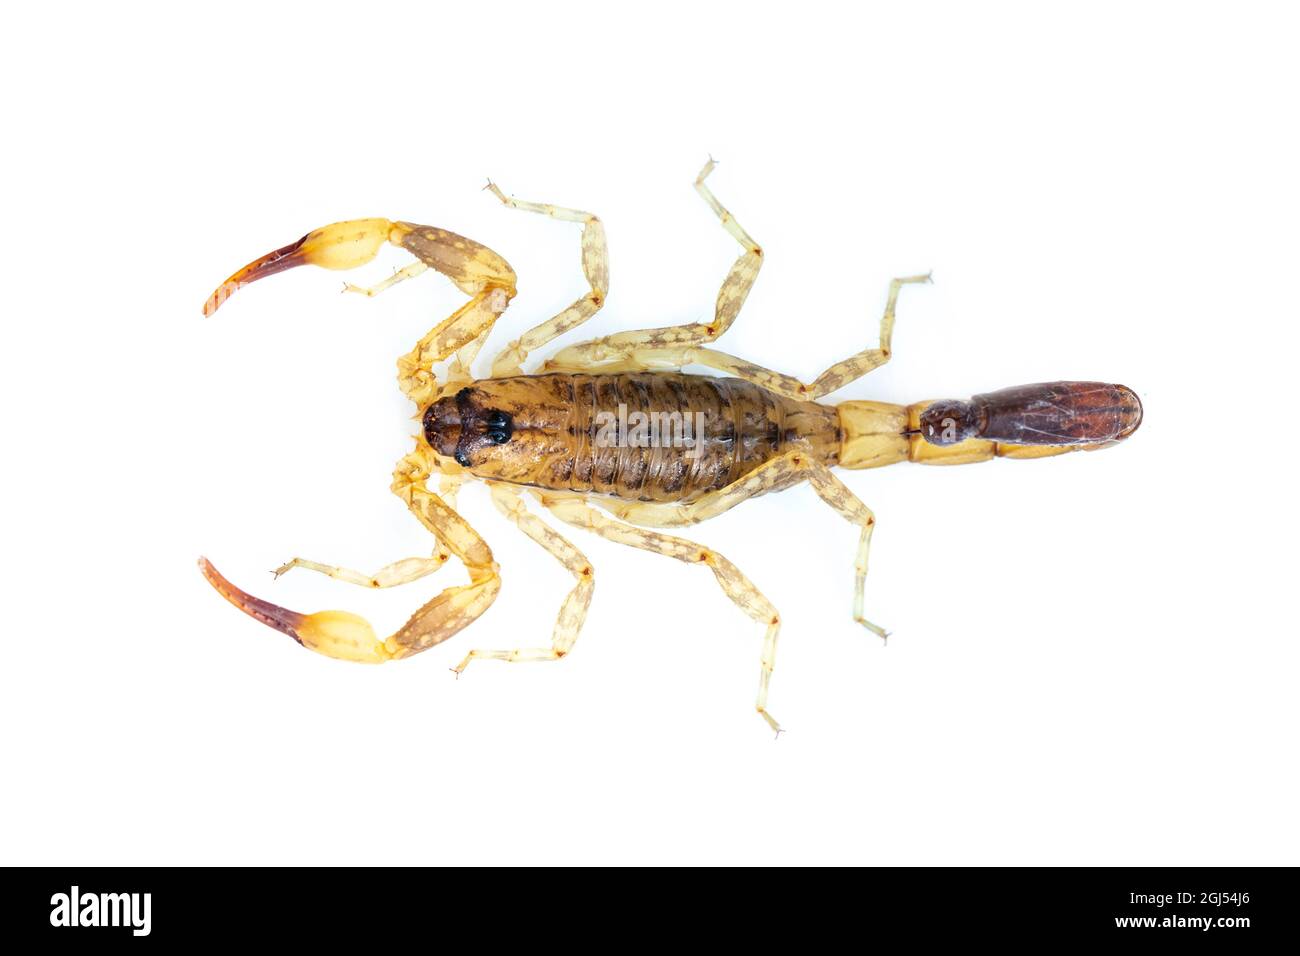 Bild von braunem Skorpion isoliert auf weißem Hintergrund. Insekt. Tier. Stockfoto